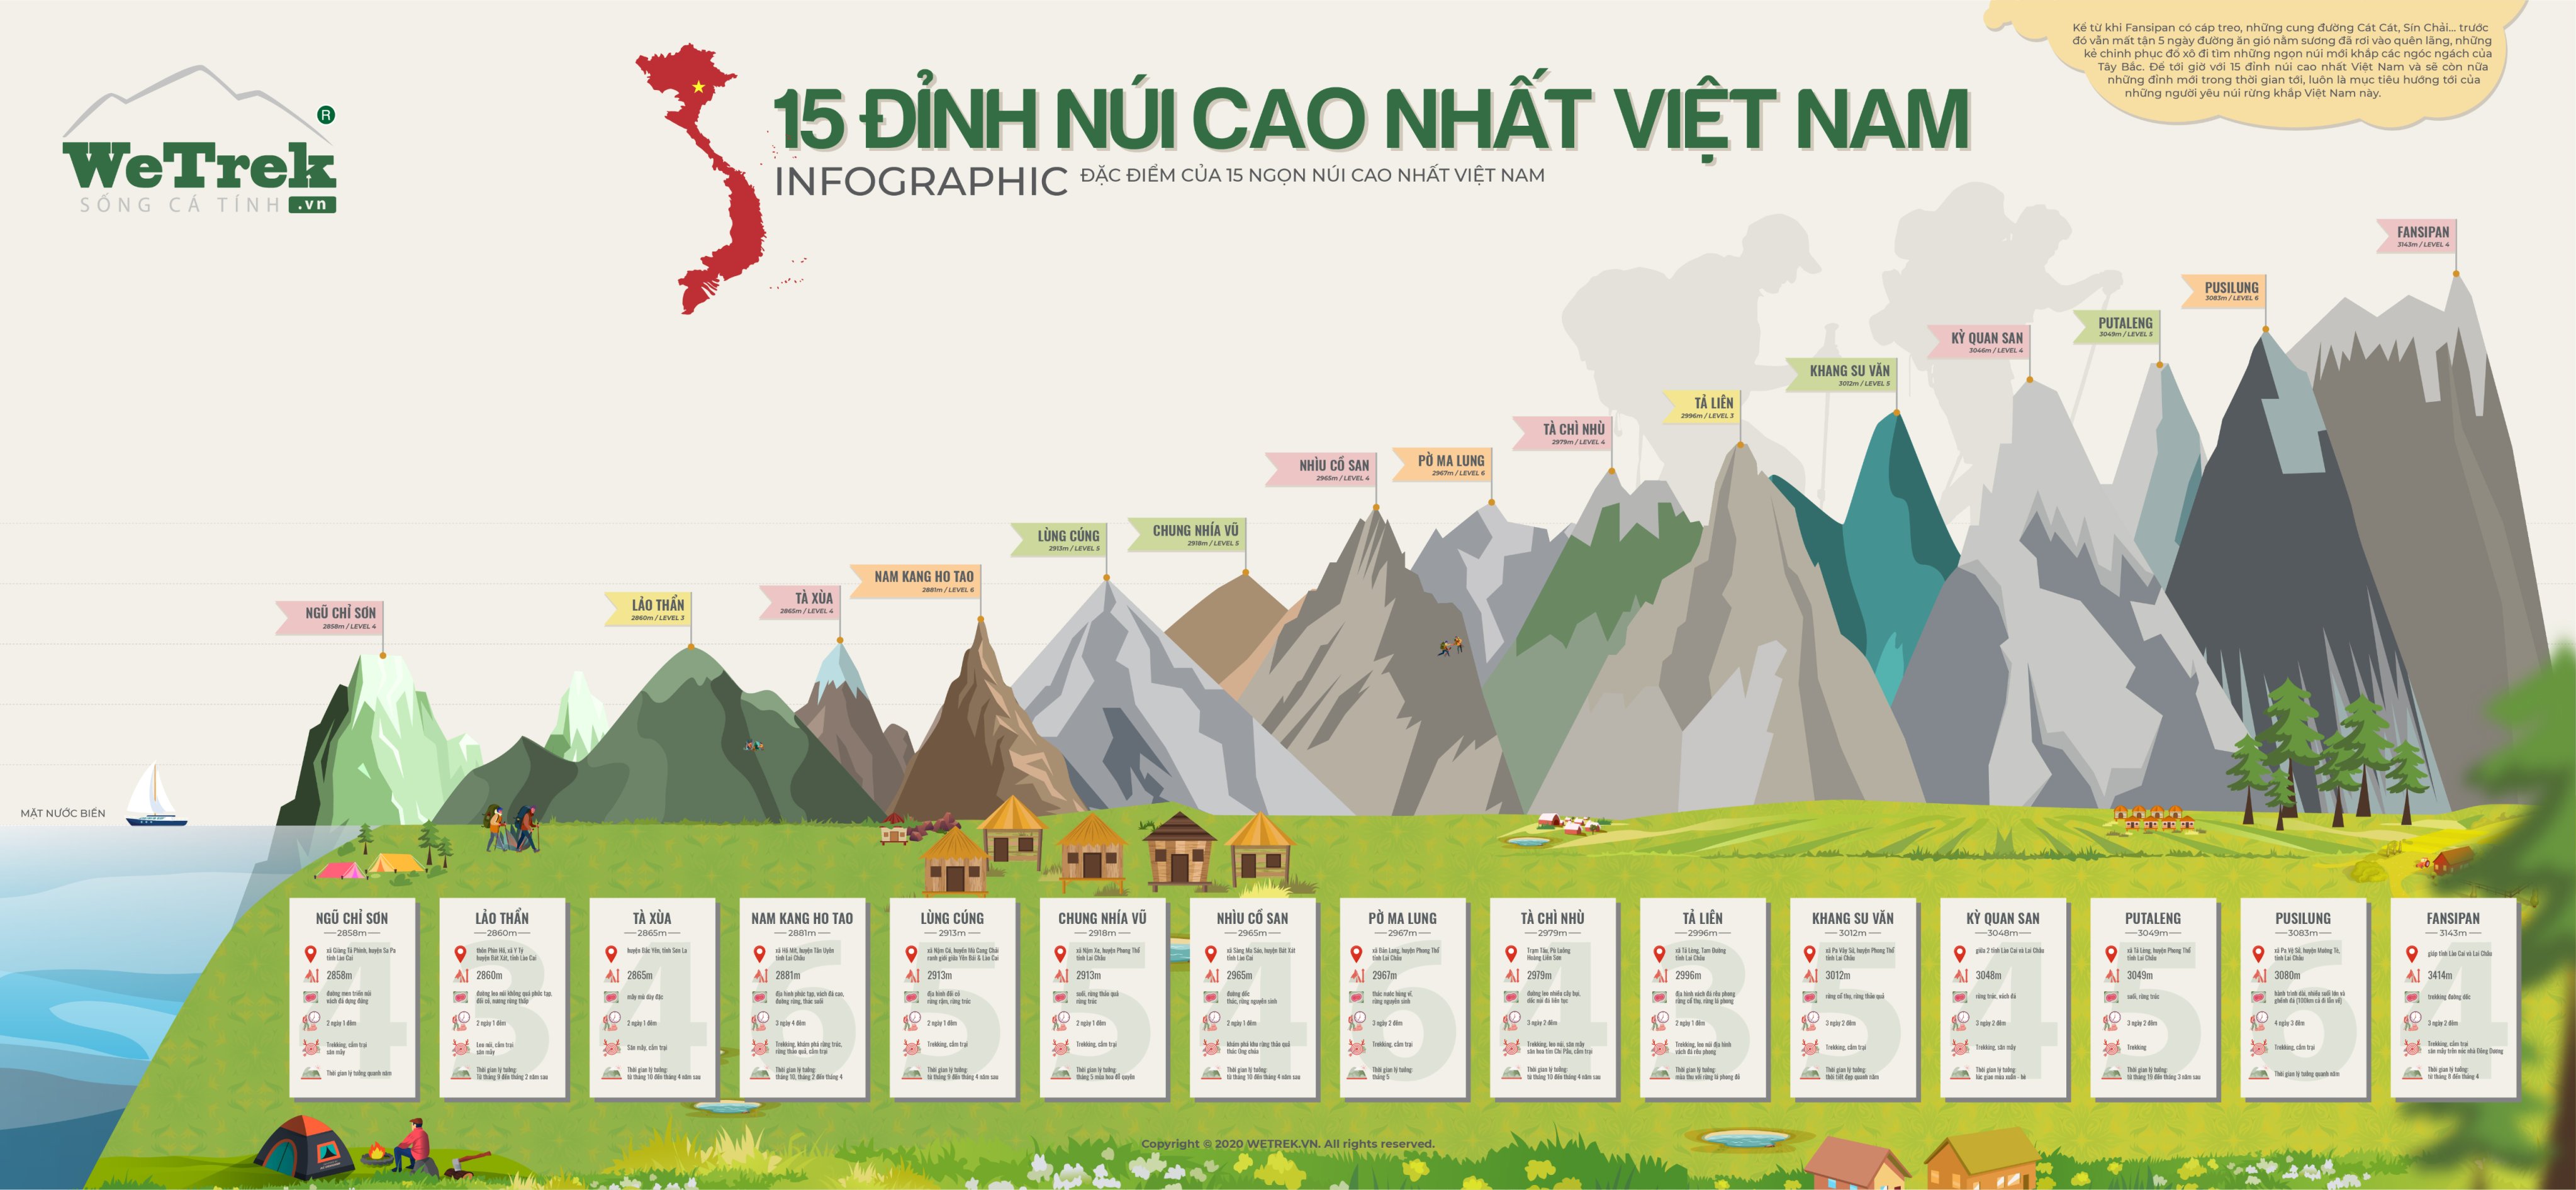 TOP 15 đỉnh núi cao nhất Việt Nam, thử thách chinh phục